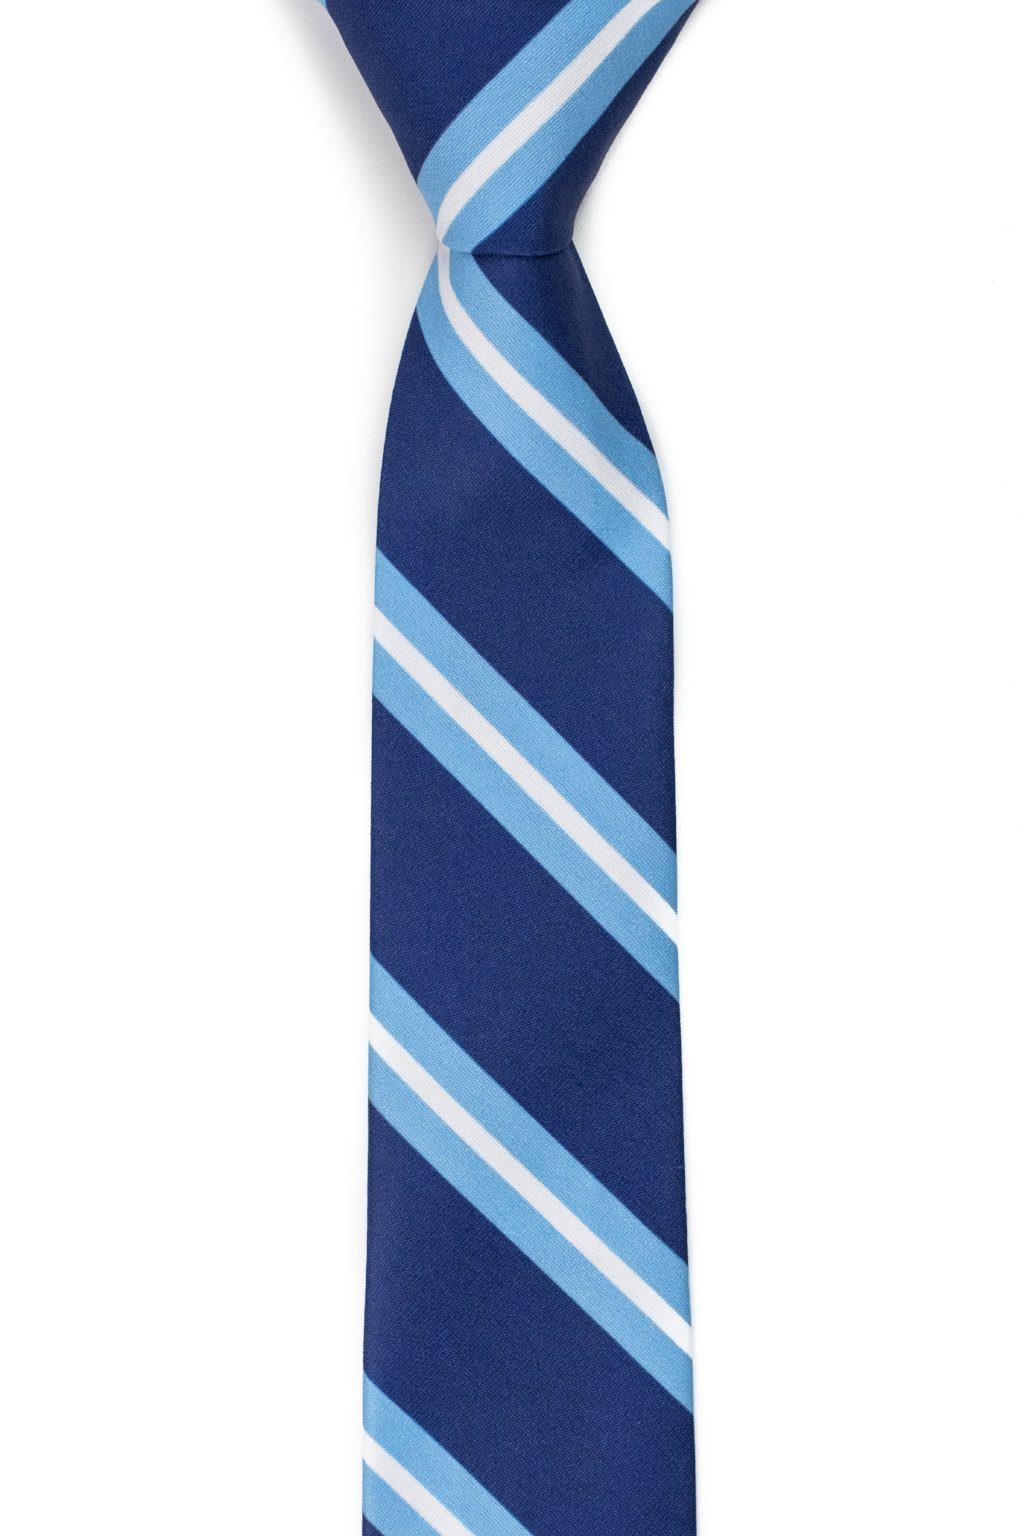 Tough Apparel Hudson Striped Tie